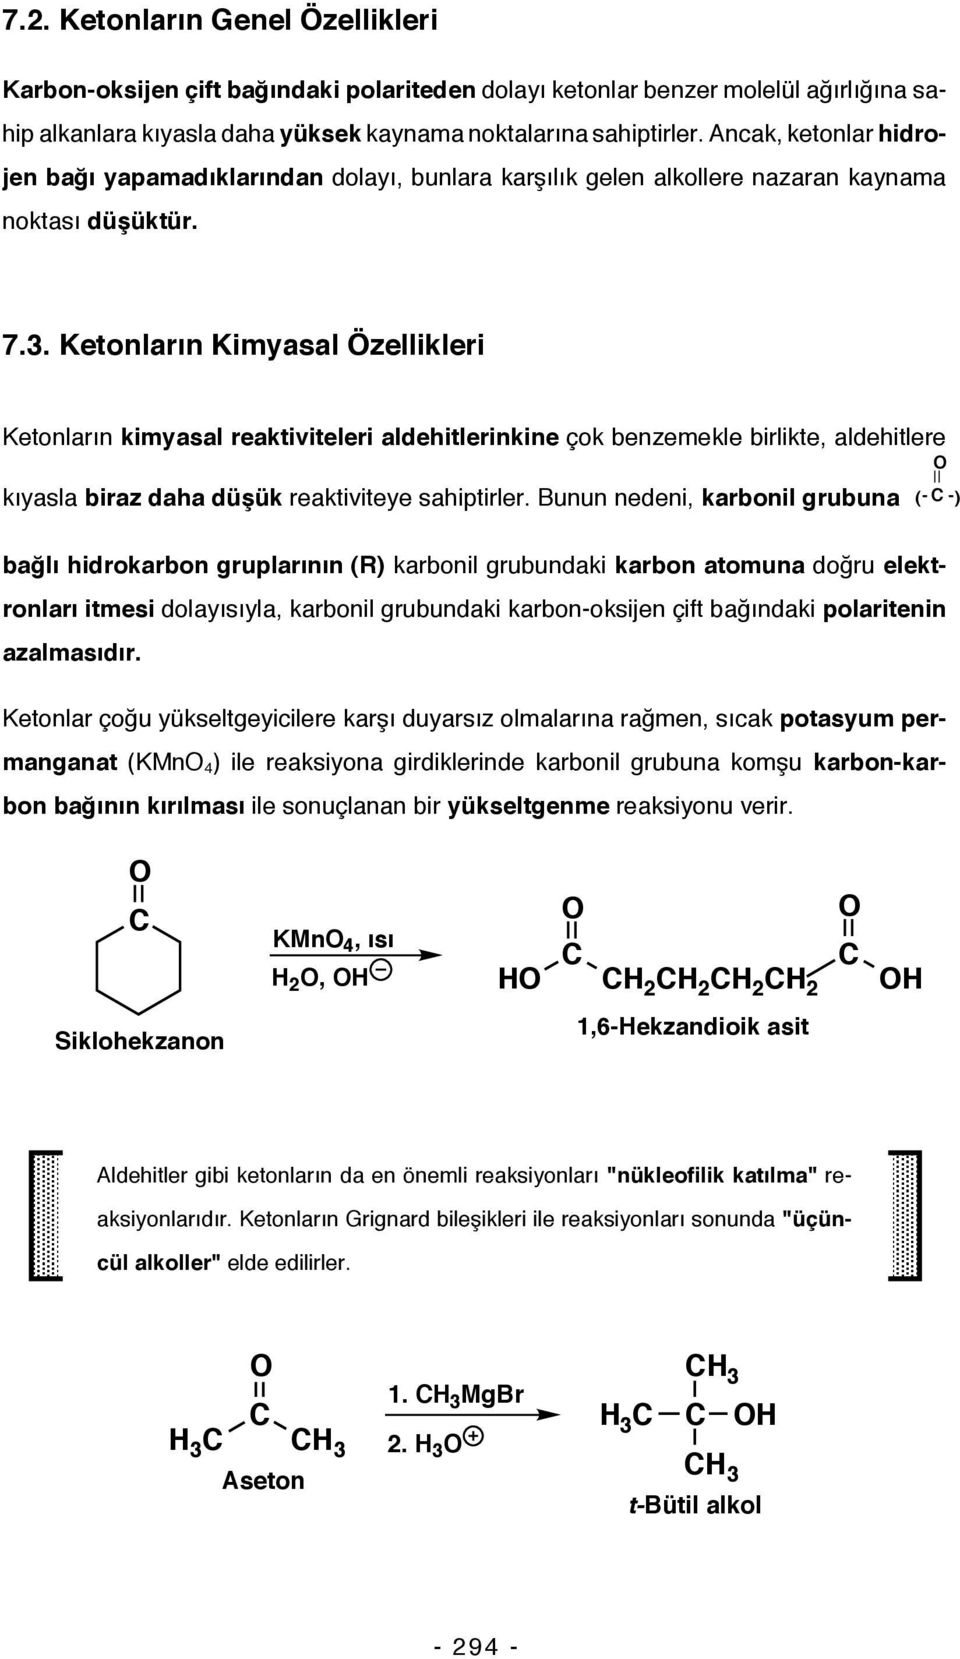 Ketonların Kimyasal Özellikleri Ketonların kimyasal reaktiviteleri aldehitlerinkine çok benzemekle birlikte, aldehitlere kıyasla biraz daha düşük reaktiviteye sahiptirler.